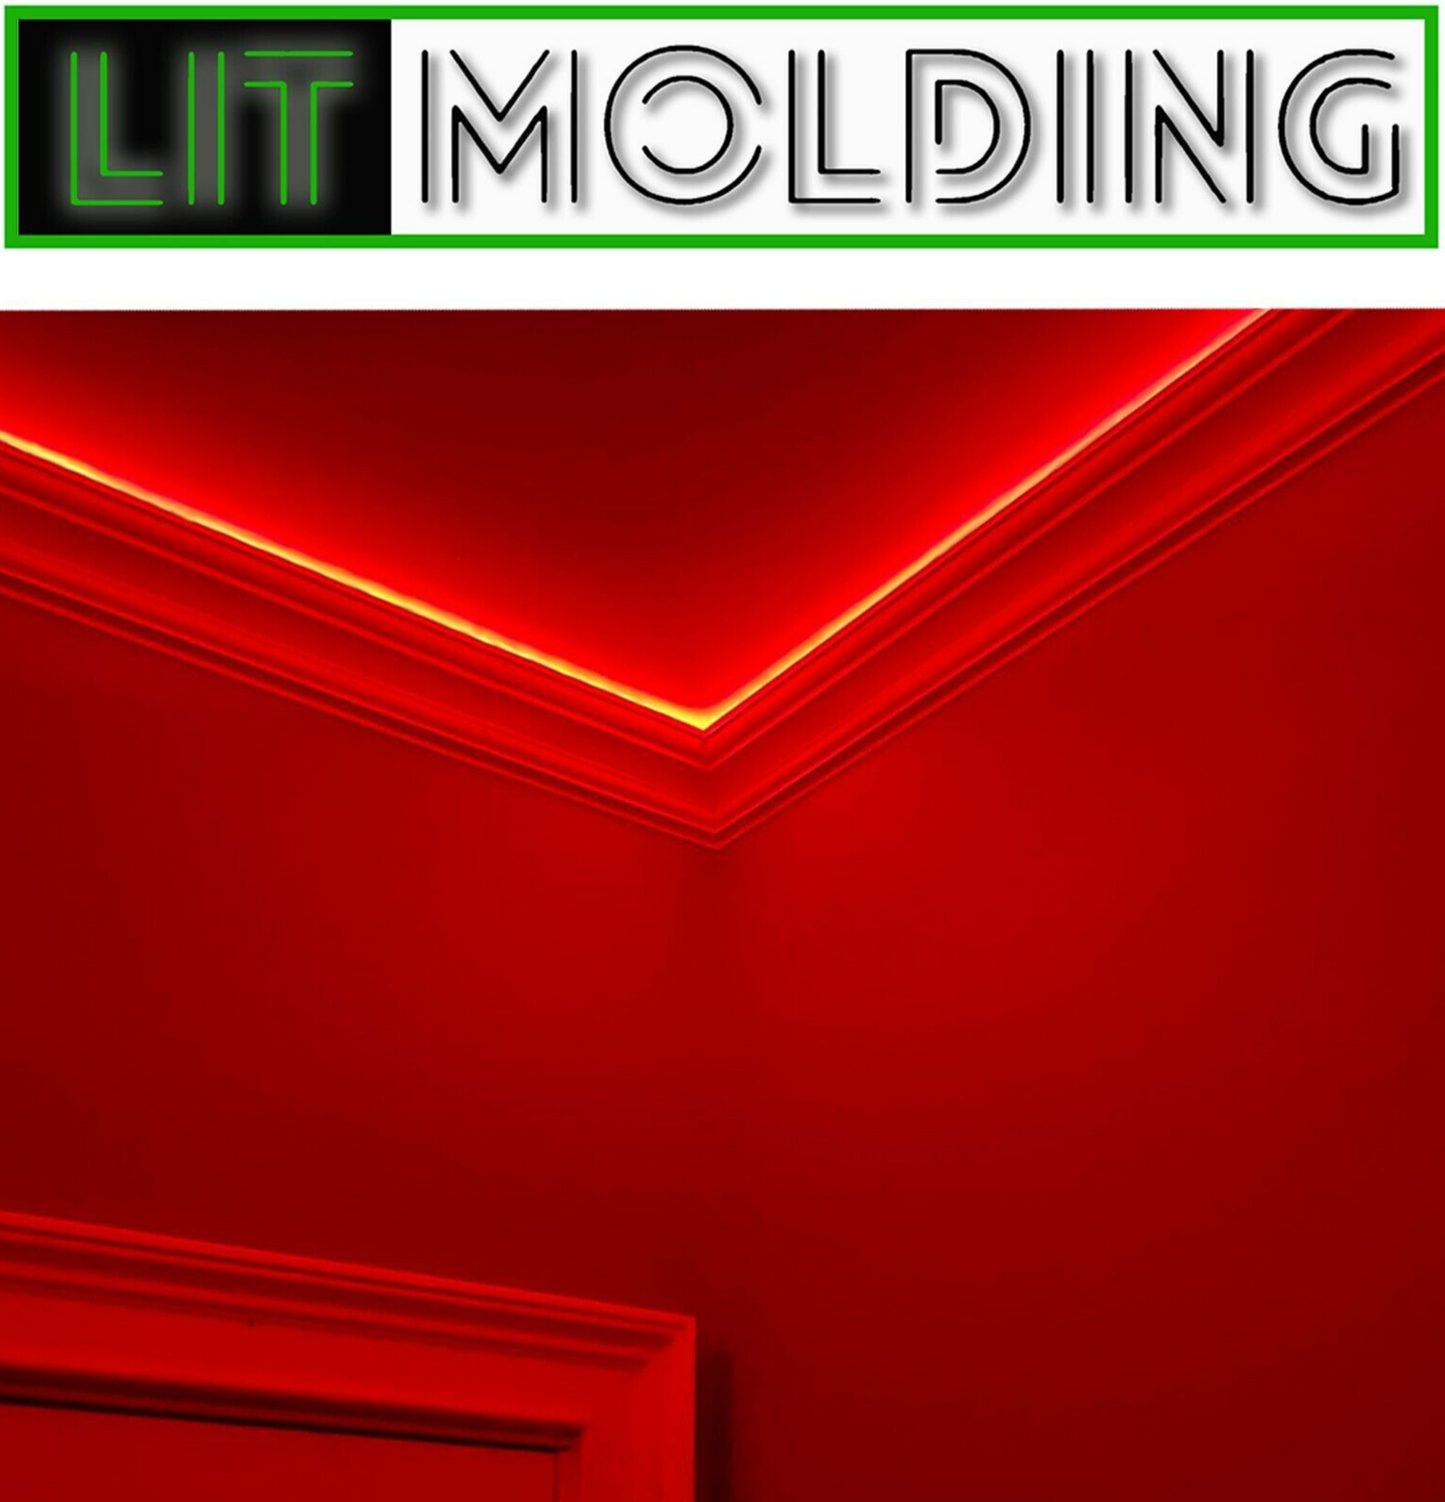 4.5" LIT Molding LED backlit crown molding 52' kit.